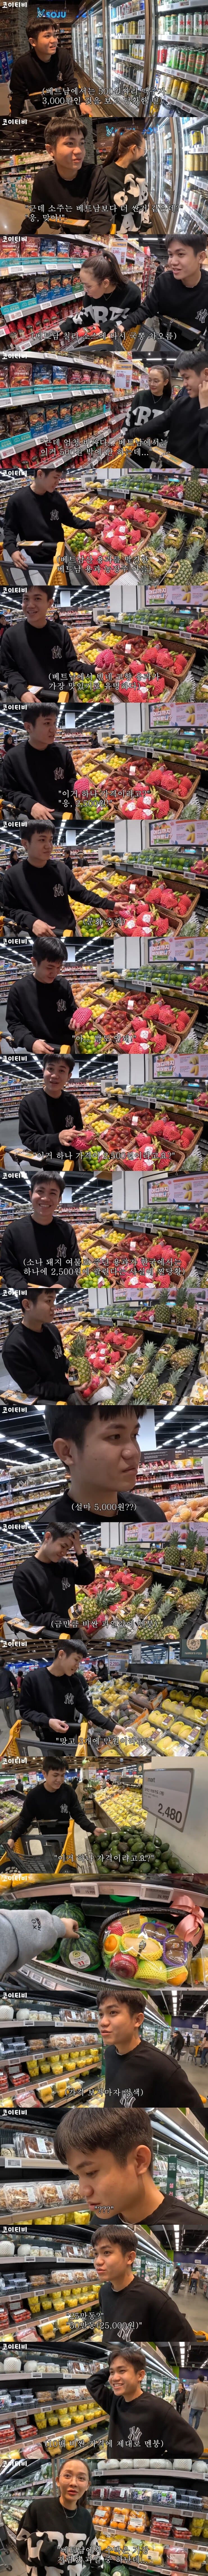 한국 과일 가격에 화들짝 놀란 외국인 - 1